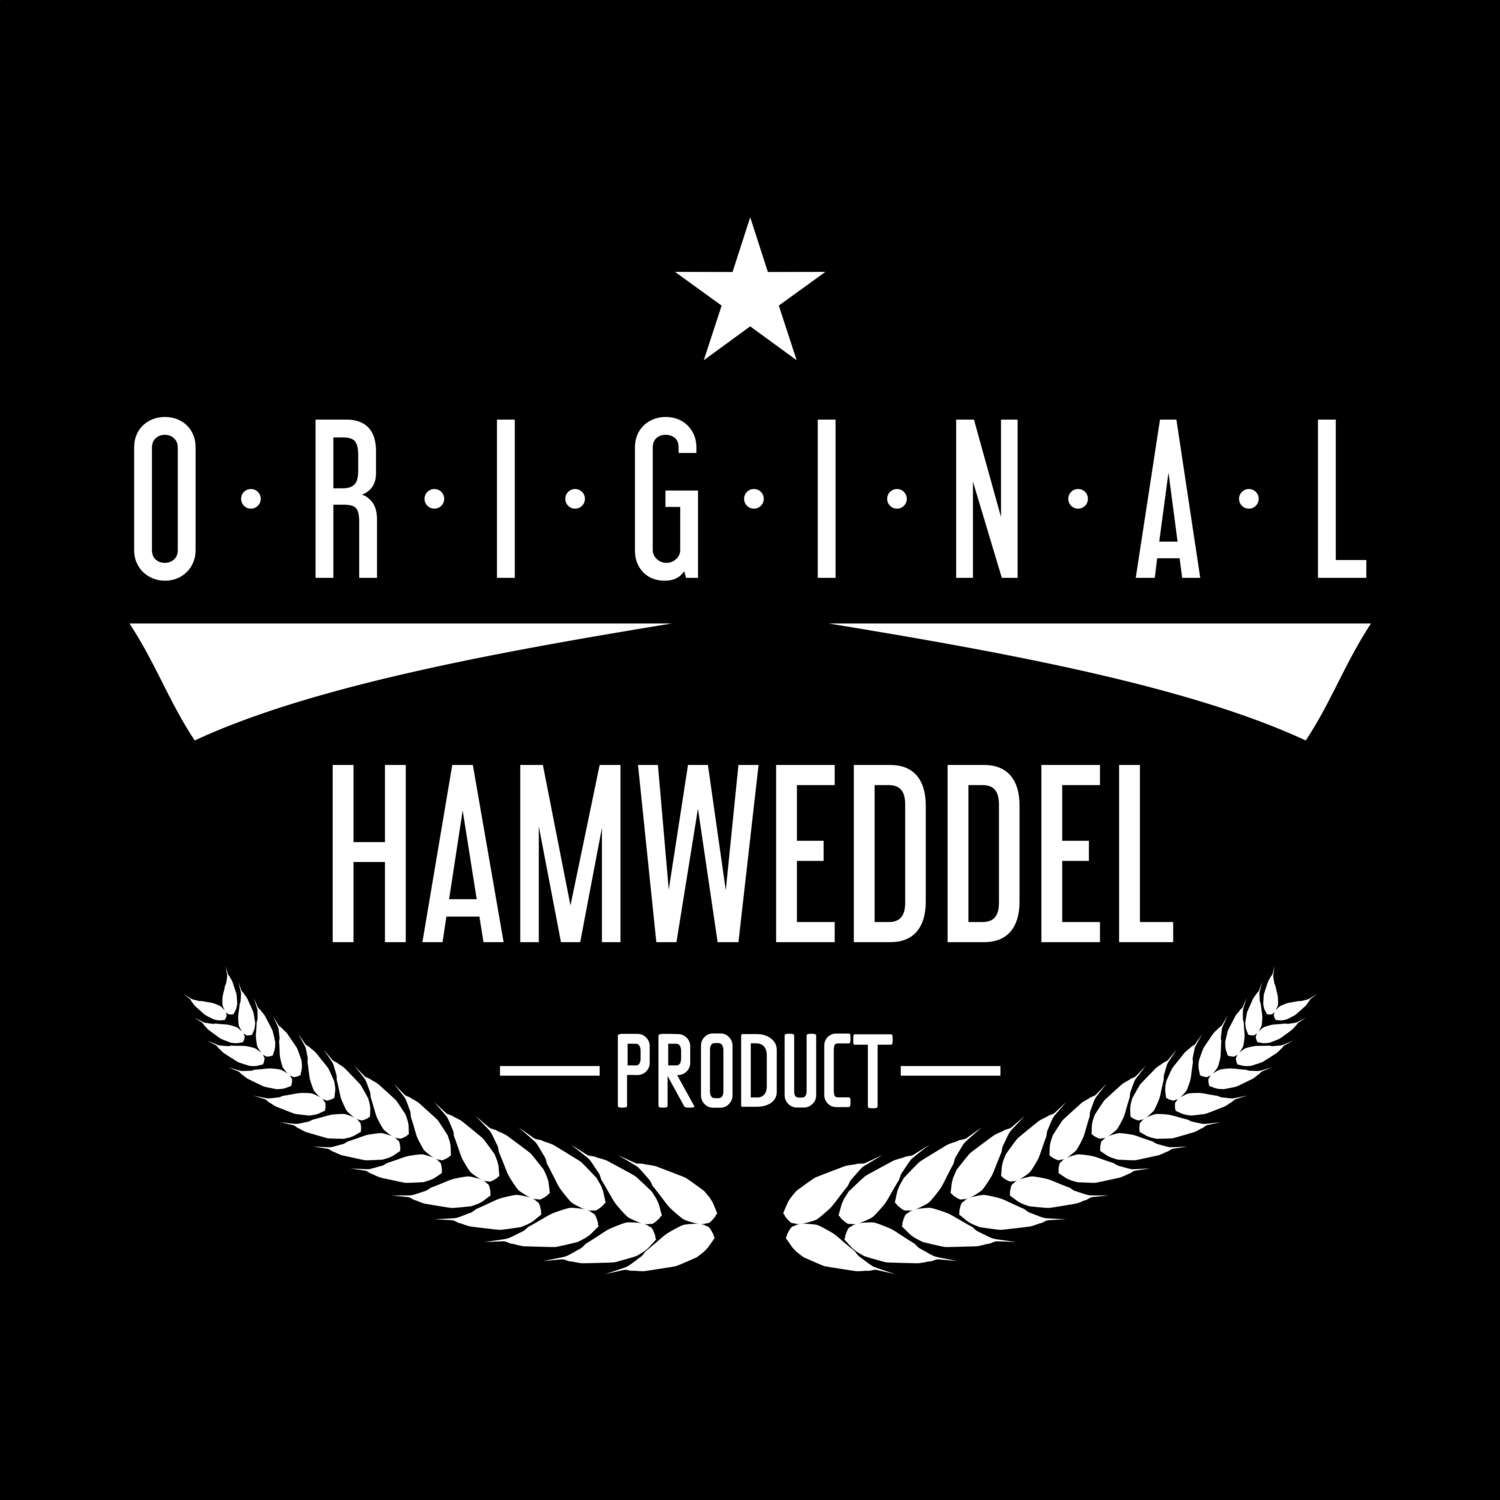 Hamweddel T-Shirt »Original Product«